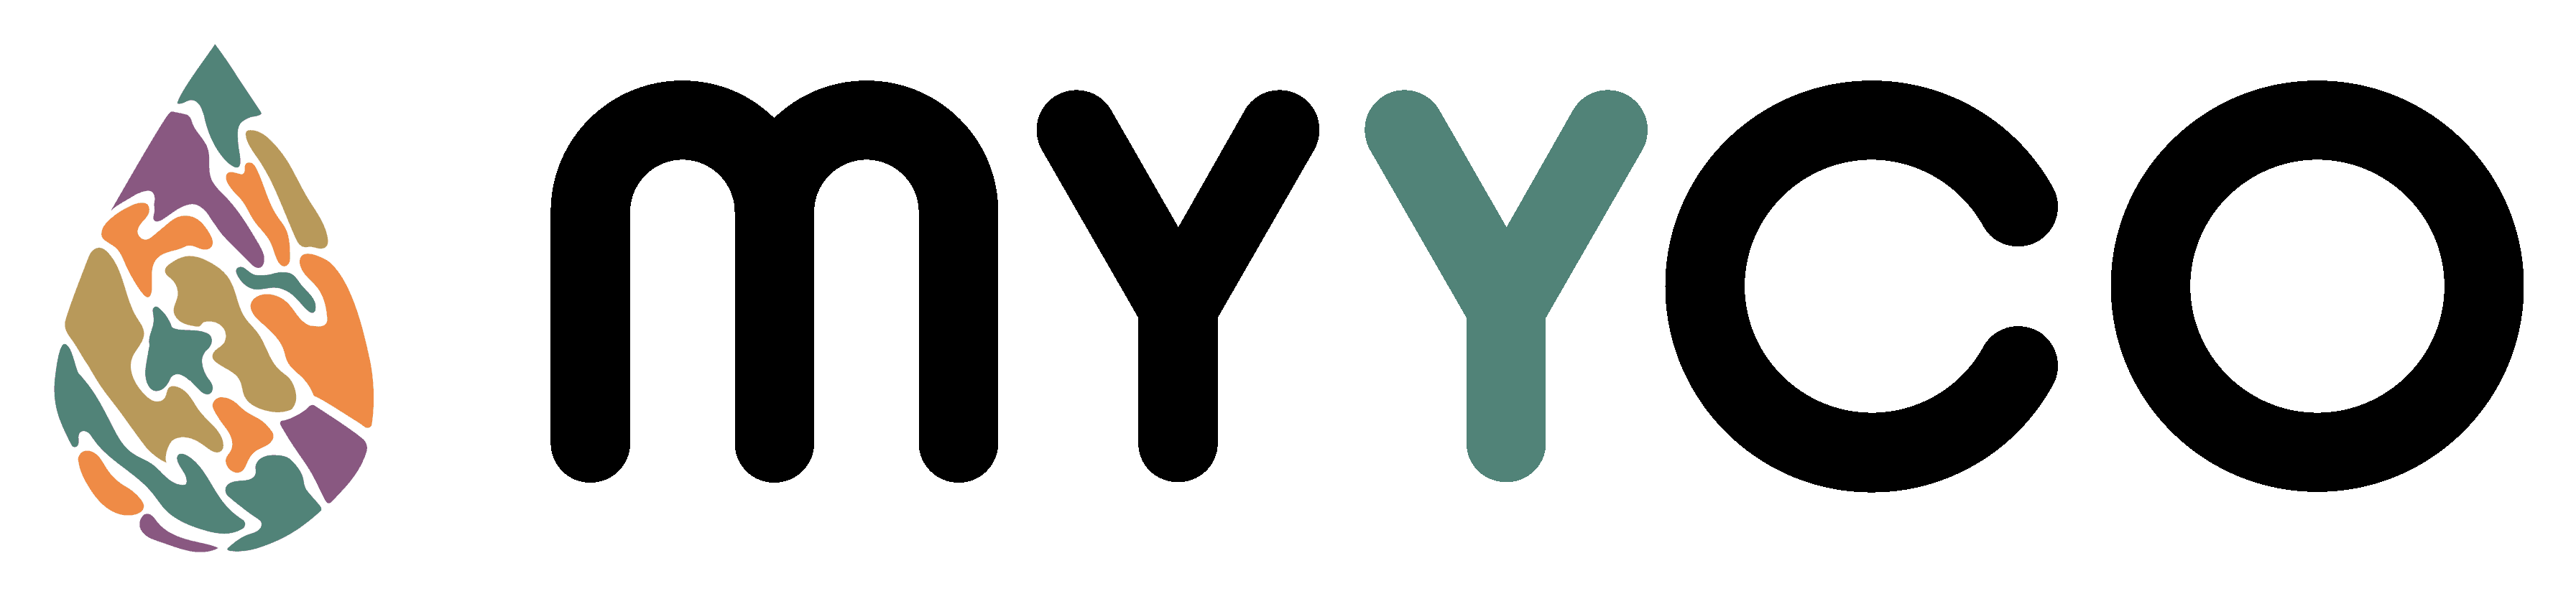 Myyco